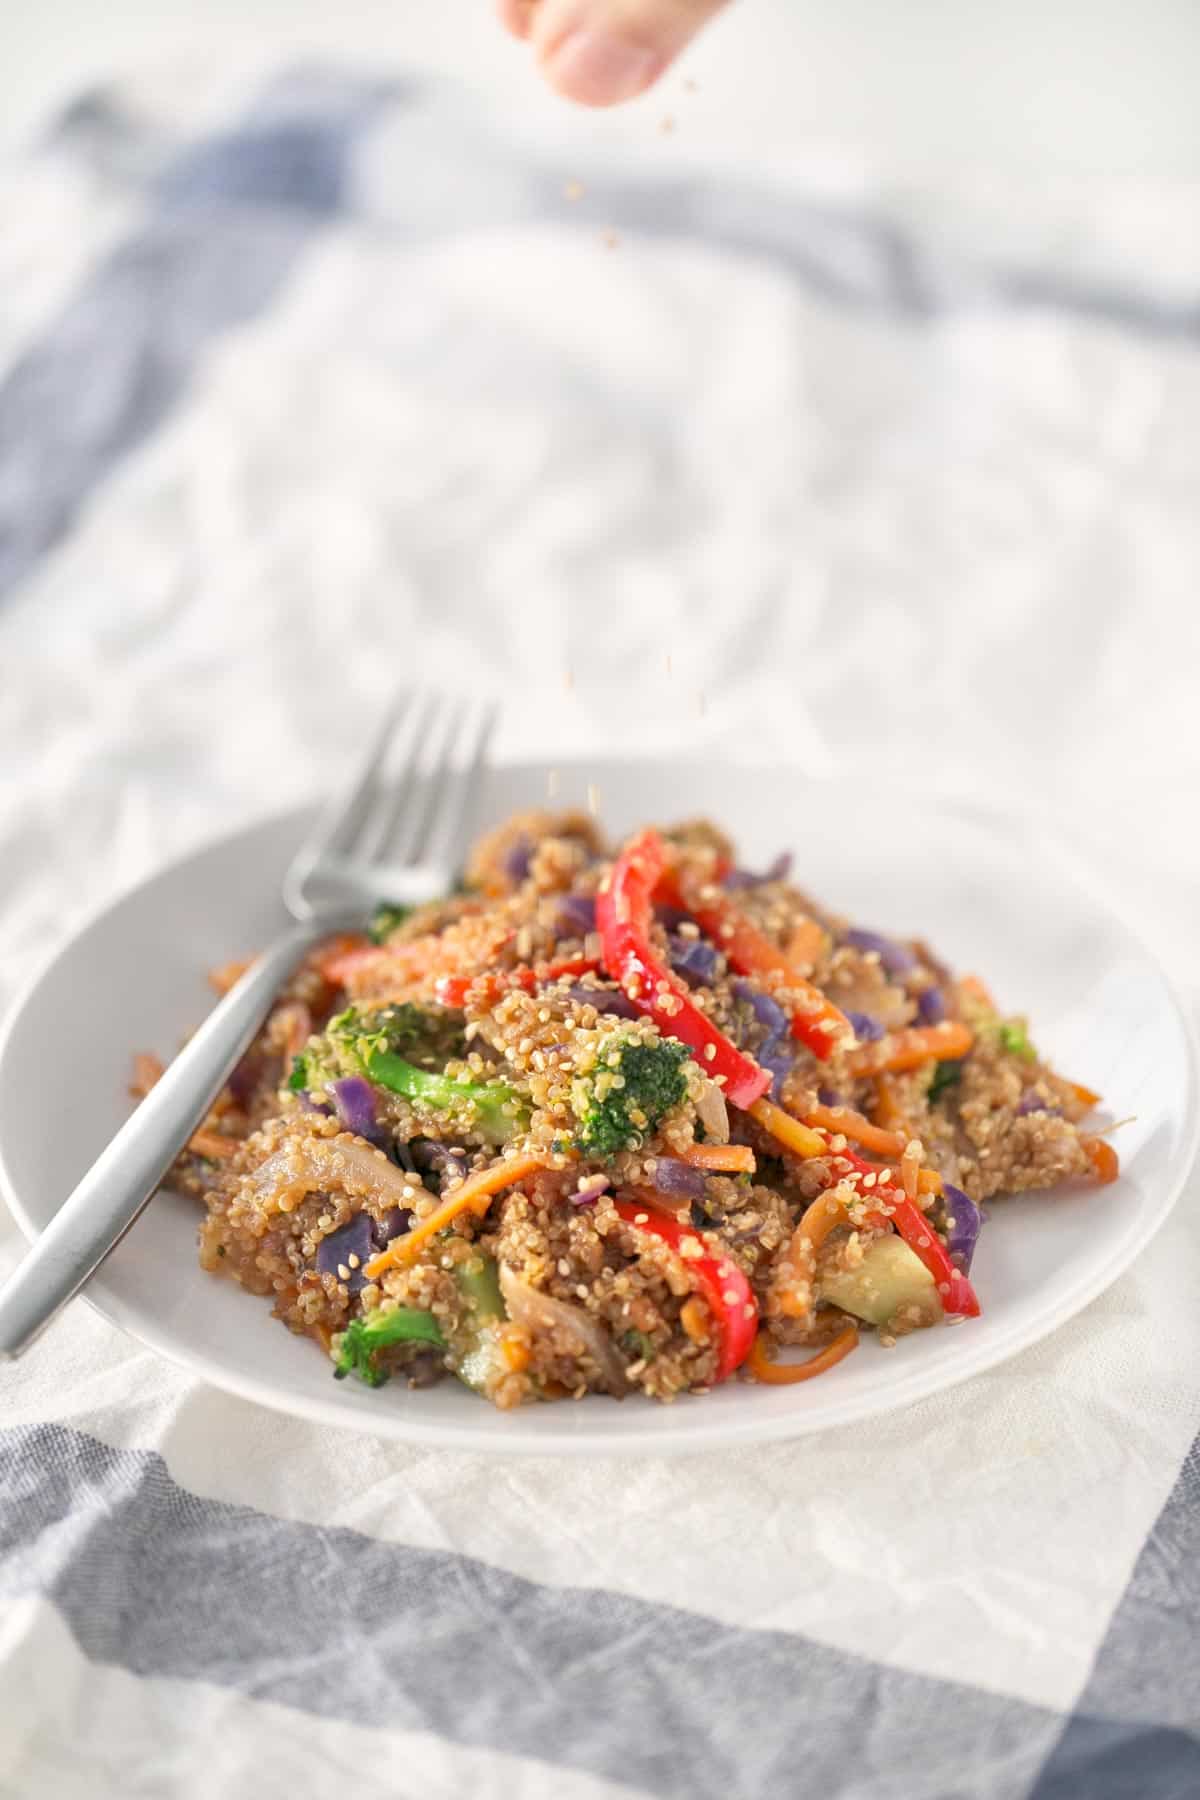 Wok de Verduras y Quinoa. - Este wok de verduras y quinoa es un plato perfecto para el día a día porque es muy nutritivo y fácil de preparar. Es ideal como receta de aprovechamiento.